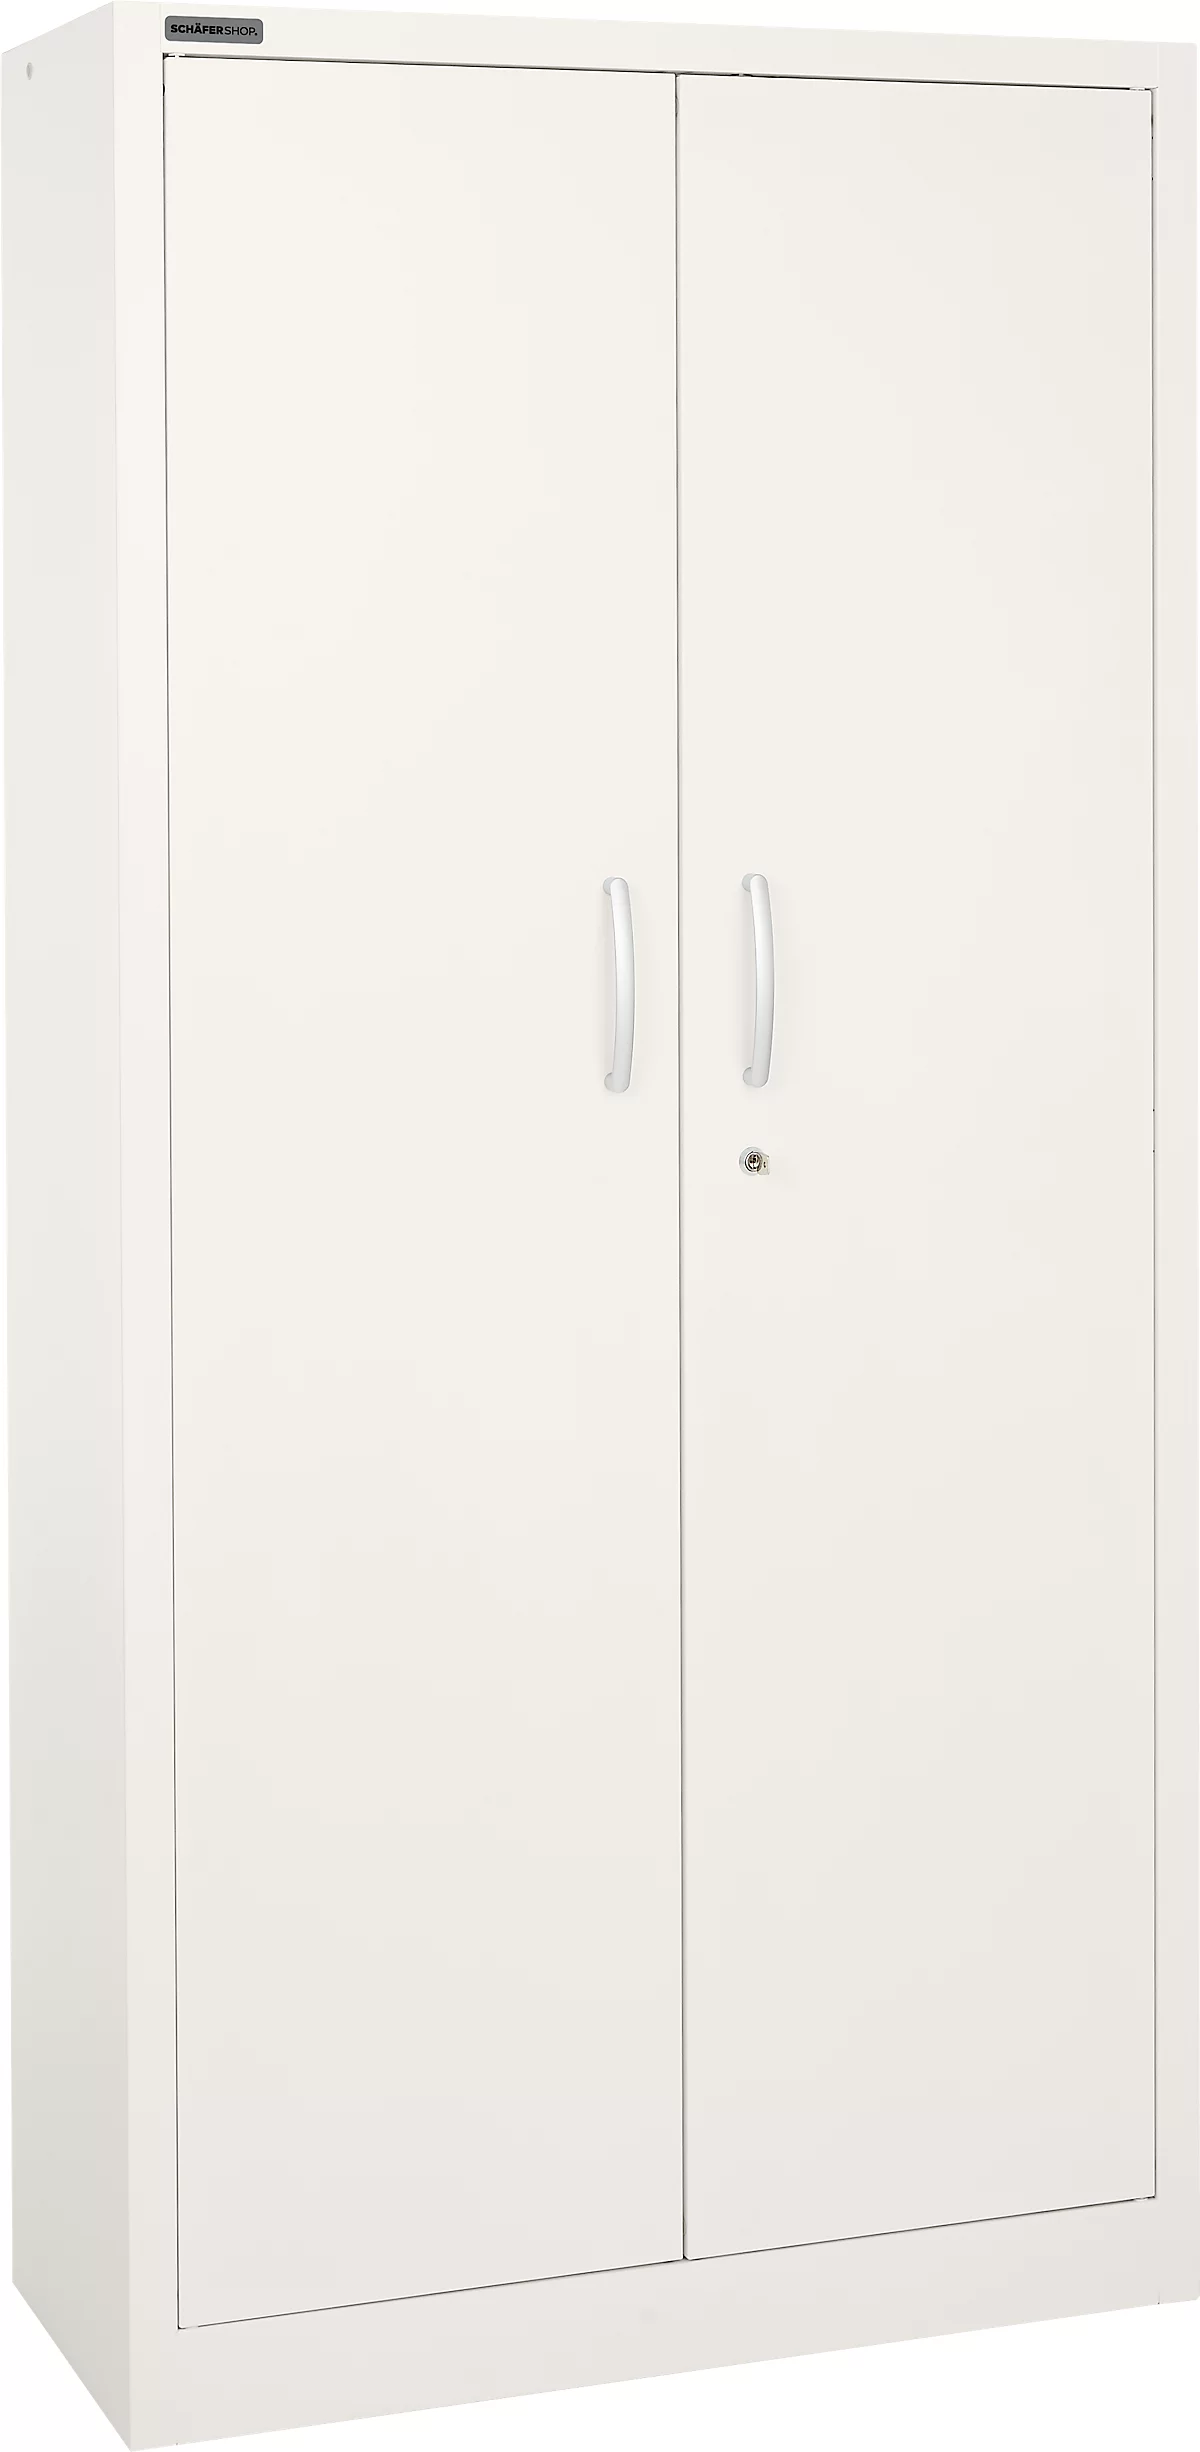 Schäfer Shop Select Armario de puertas batientes MS iCOLOUR, acero, 5 alturas de archivo, An 950 mm, blanco RAL 9003